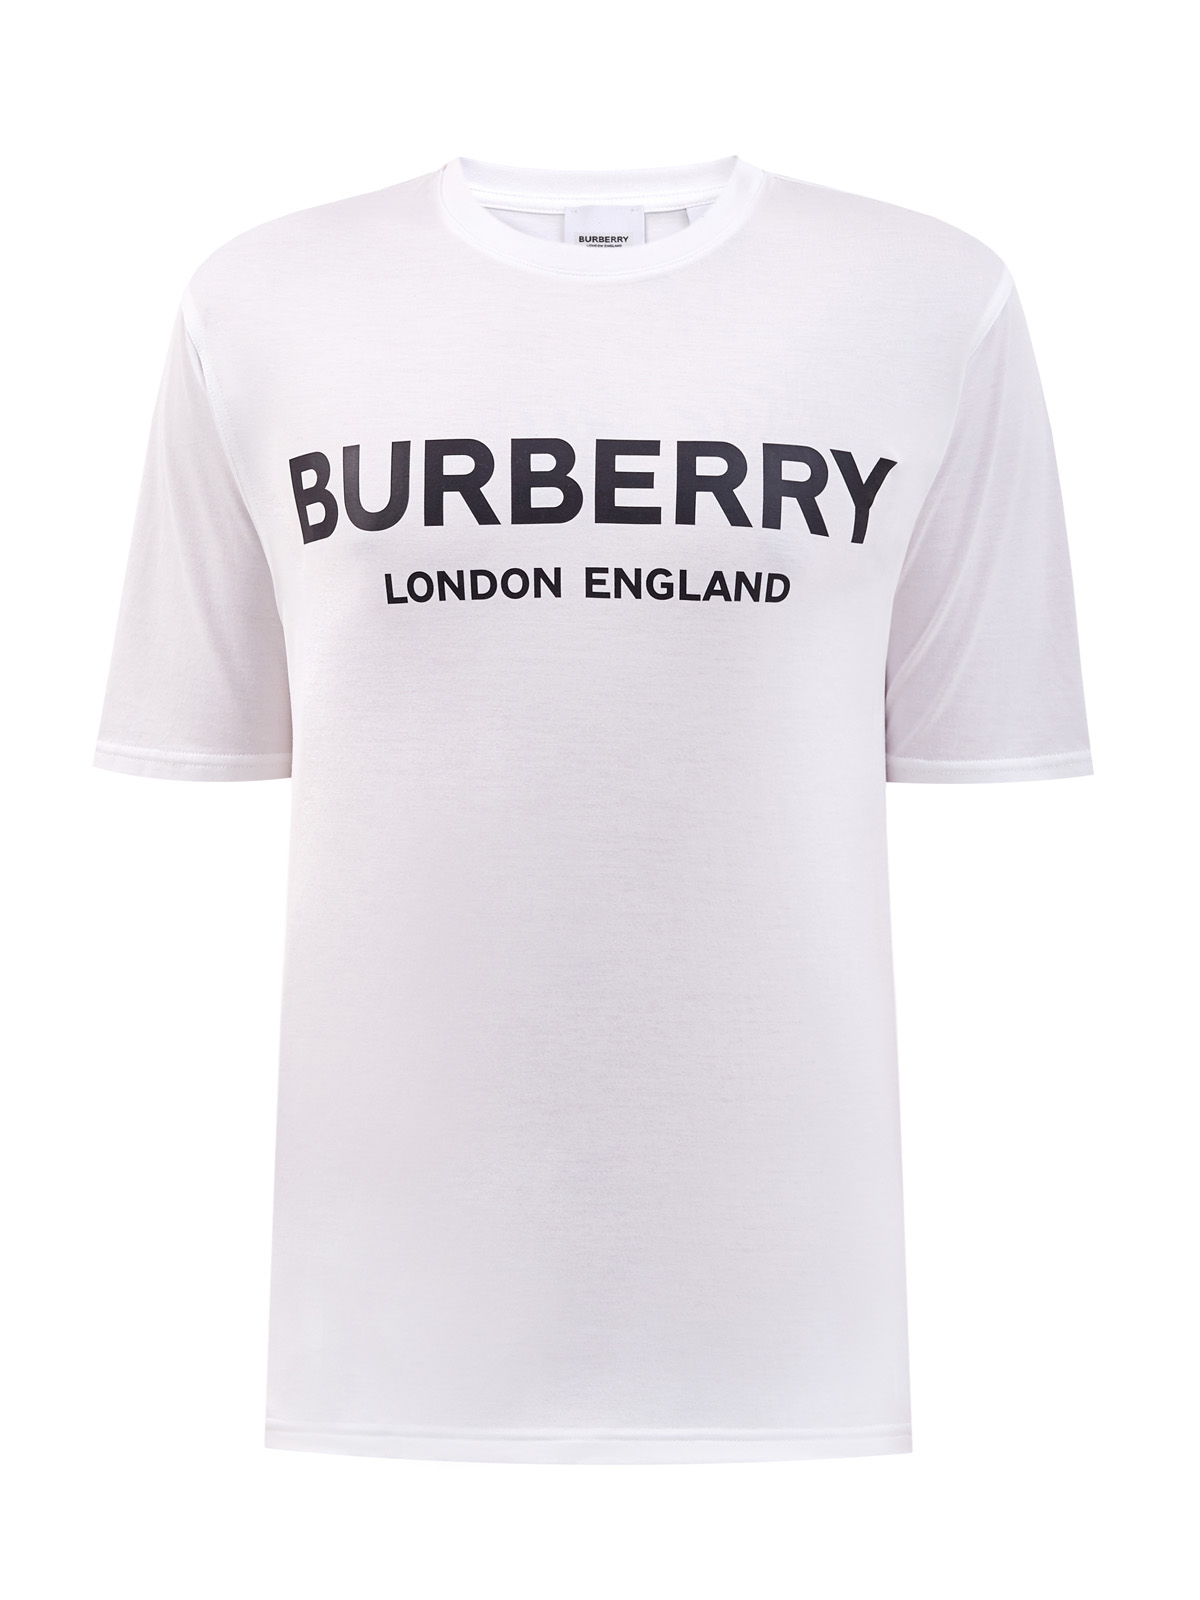 Хлопковая футболка из джерси с аппликацией BURBERRY, цвет белый, размер S - фото 1